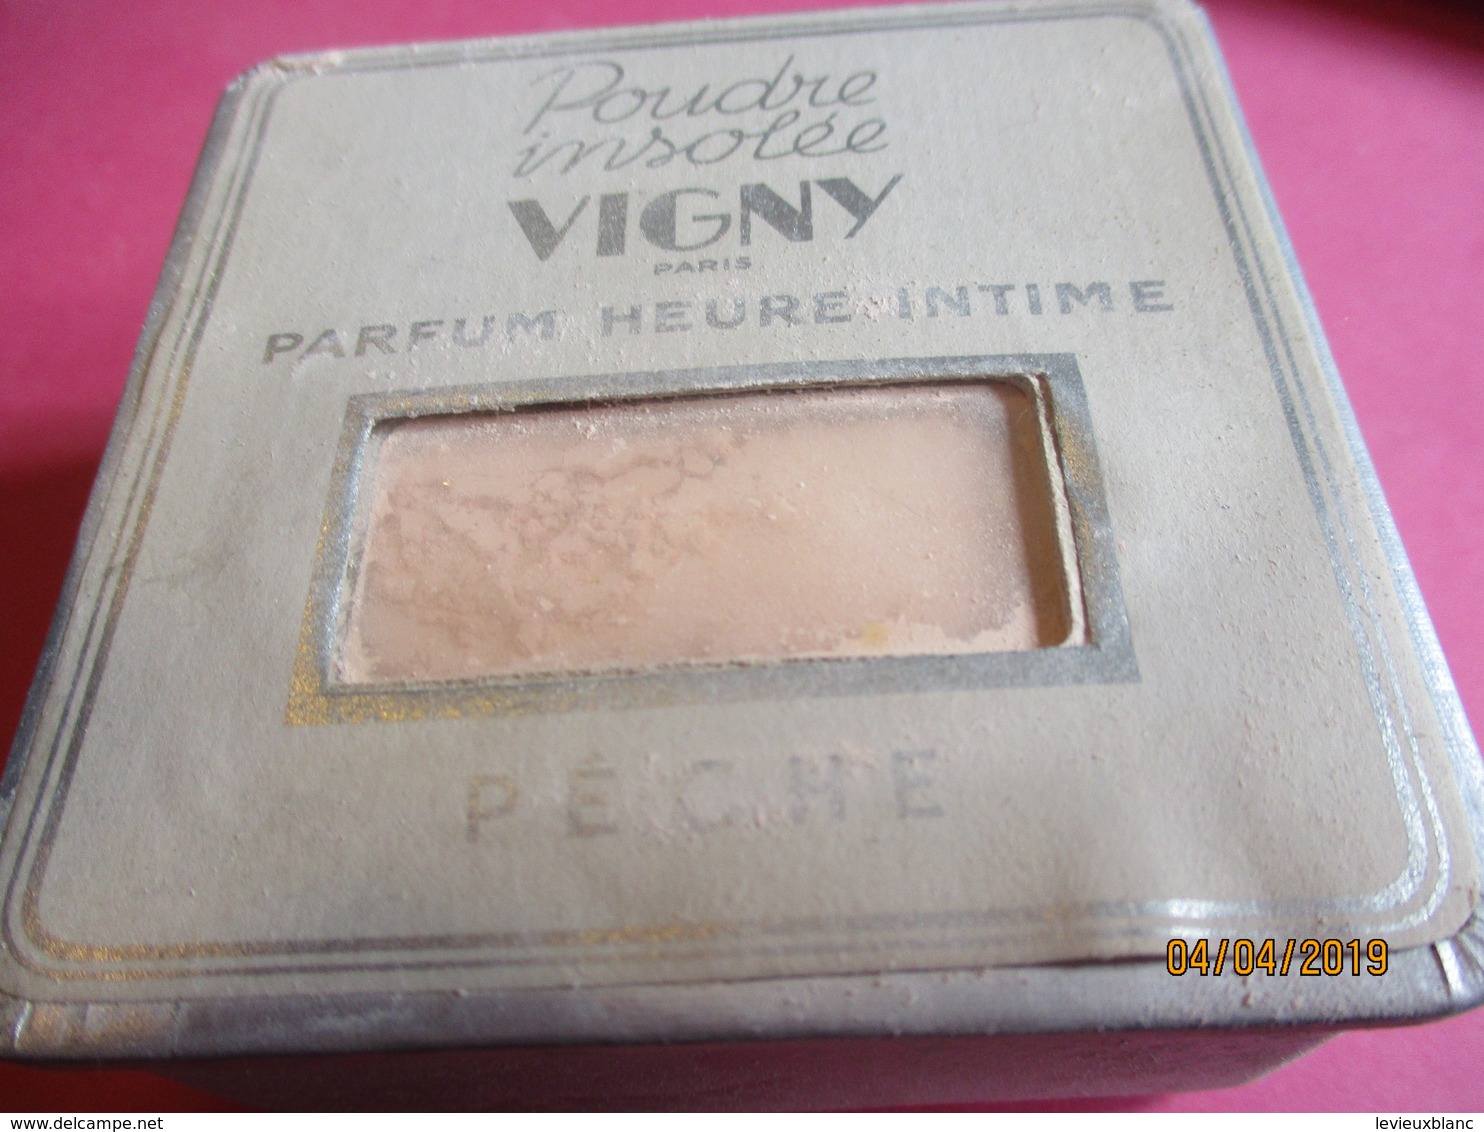 Maquillage/Boite De Poudre De Riz/VIGNY/Paris / Poudre Insolée/Parfum Heure Intime/Pêche/Vers 1930-50       PARF192 - Beauty Products